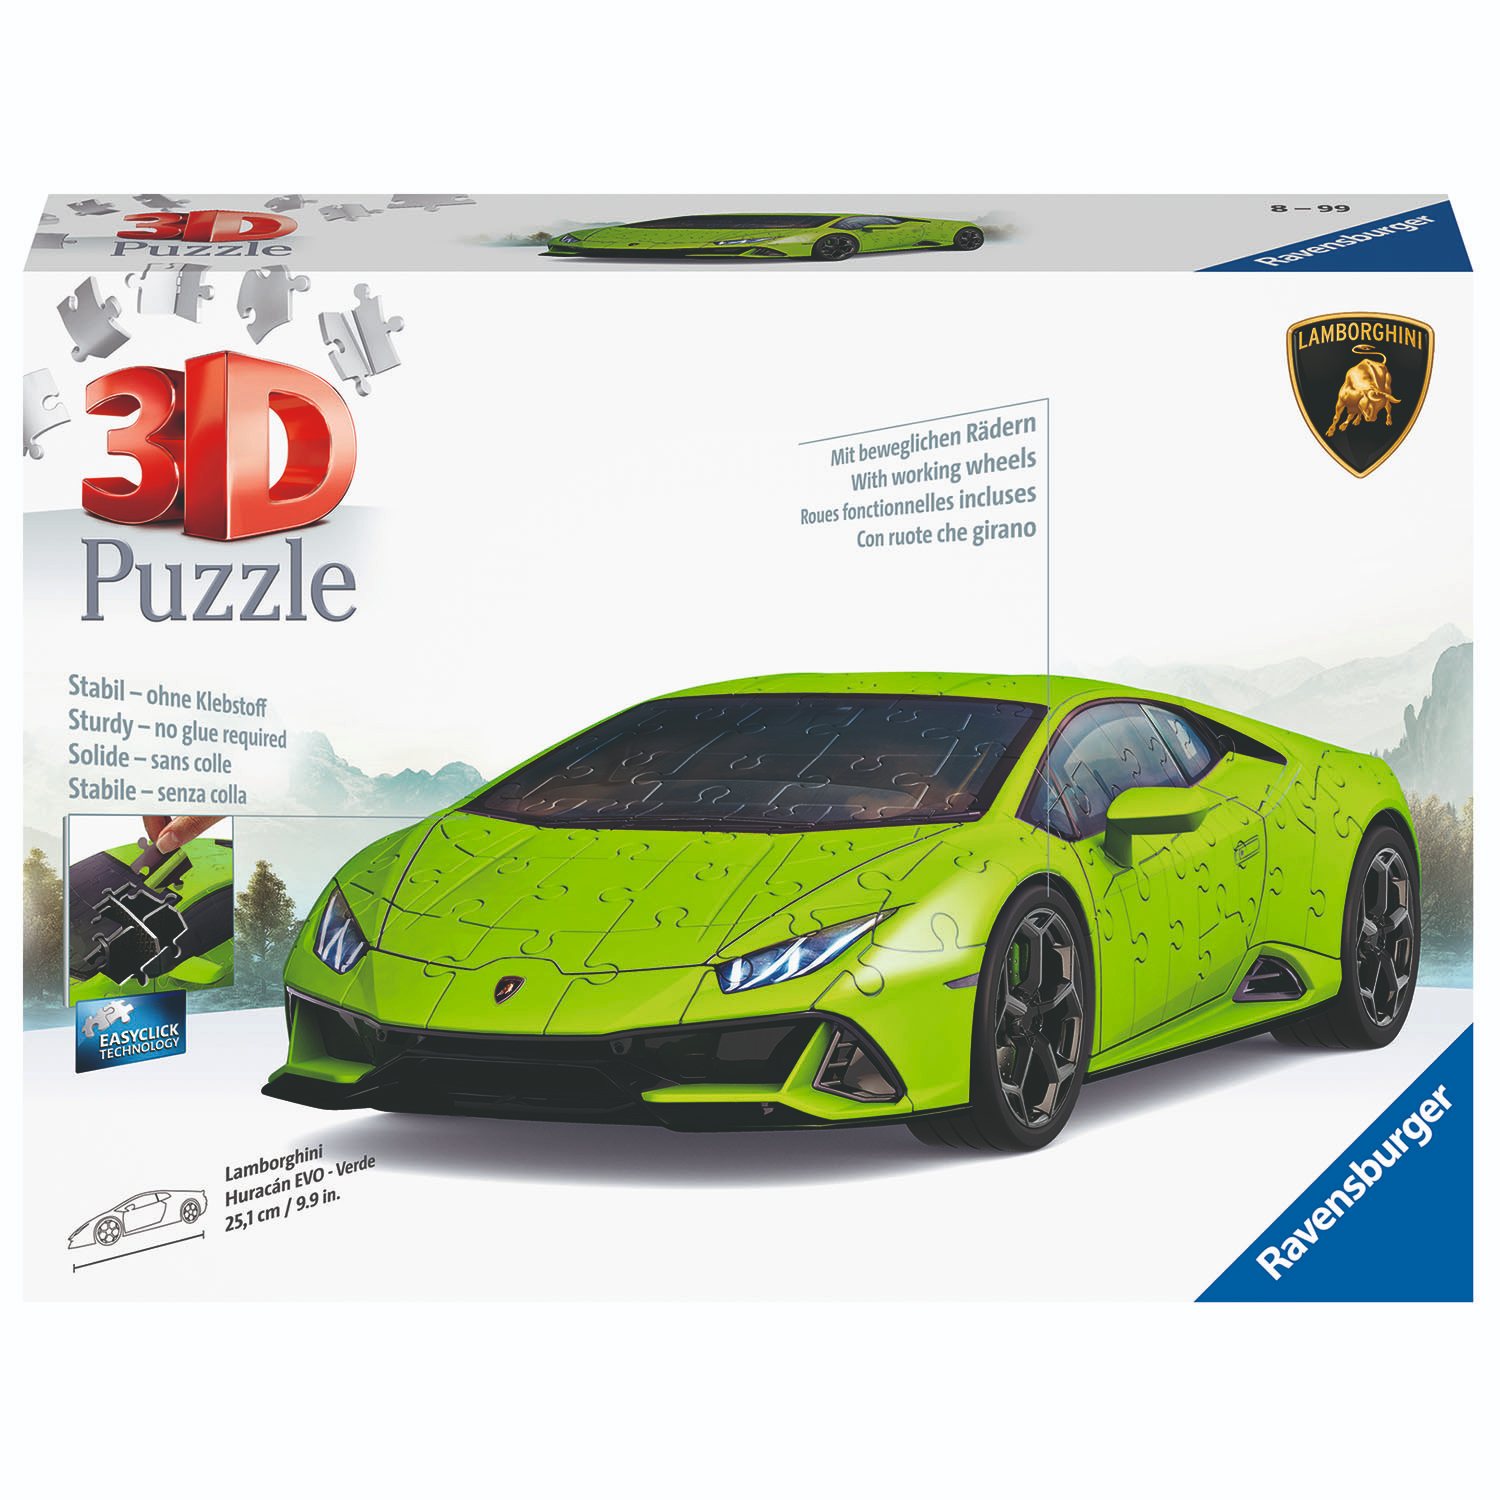 Ravensburger Verlag Ravensburger 11559 - Lamborghini Huracán EVO Verde, Maßstab 1:18, 3D-Puzzle, 108 Teile